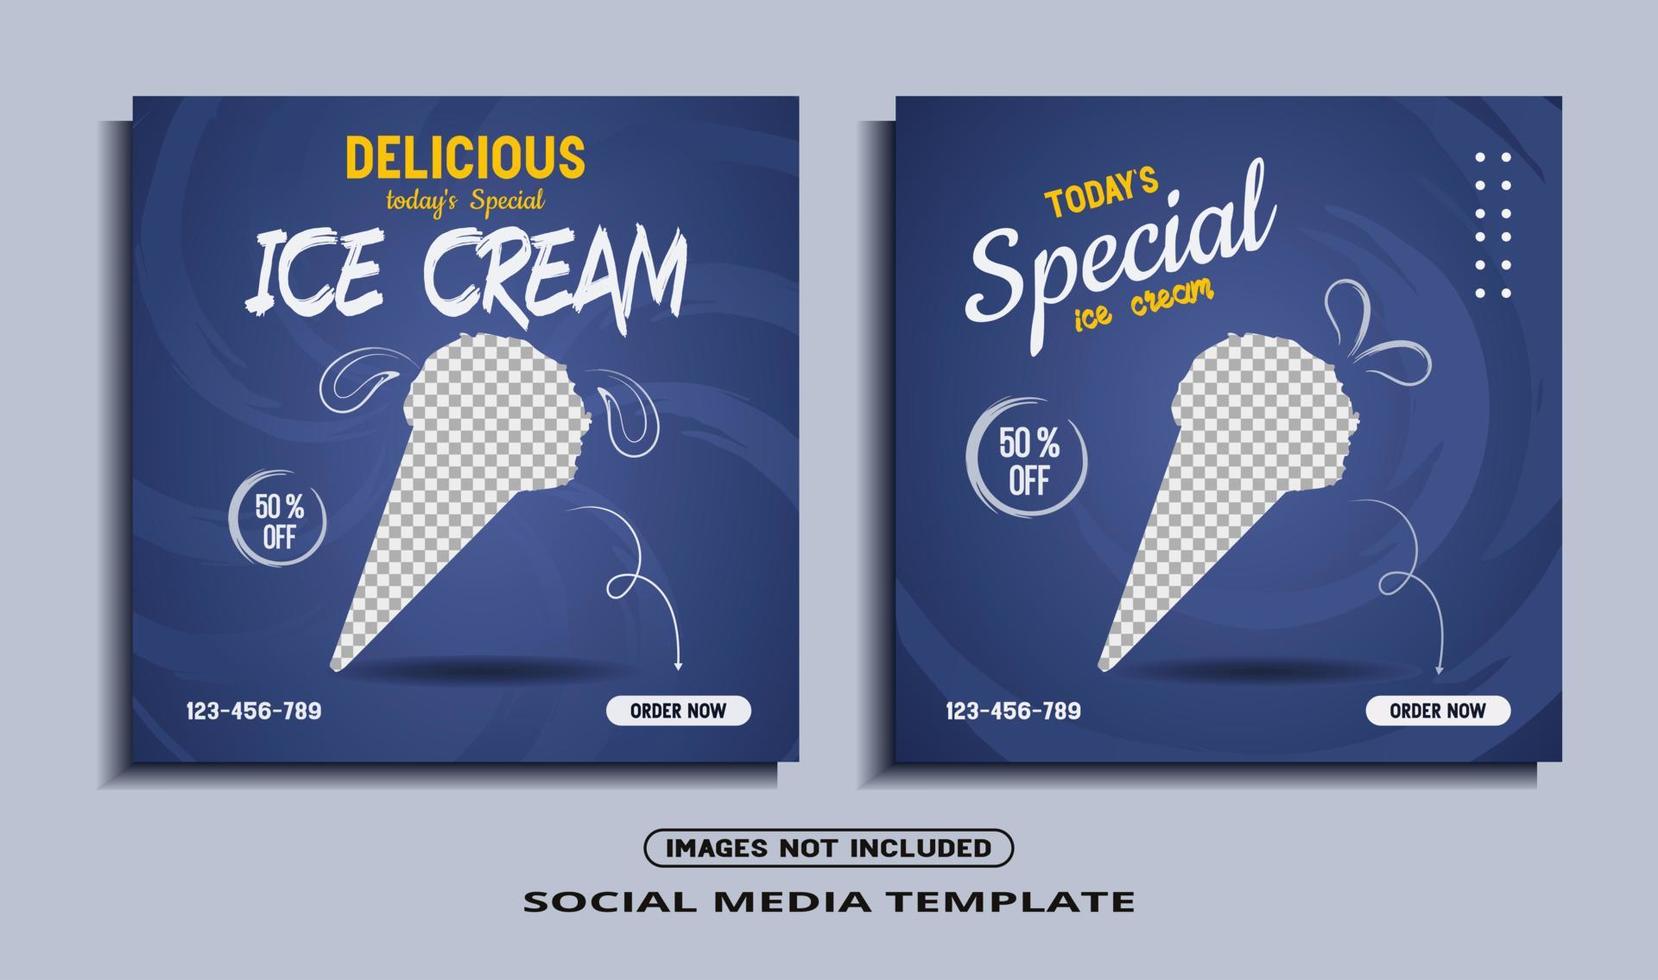 modelo de postagem de mídia social de sorvete vetor